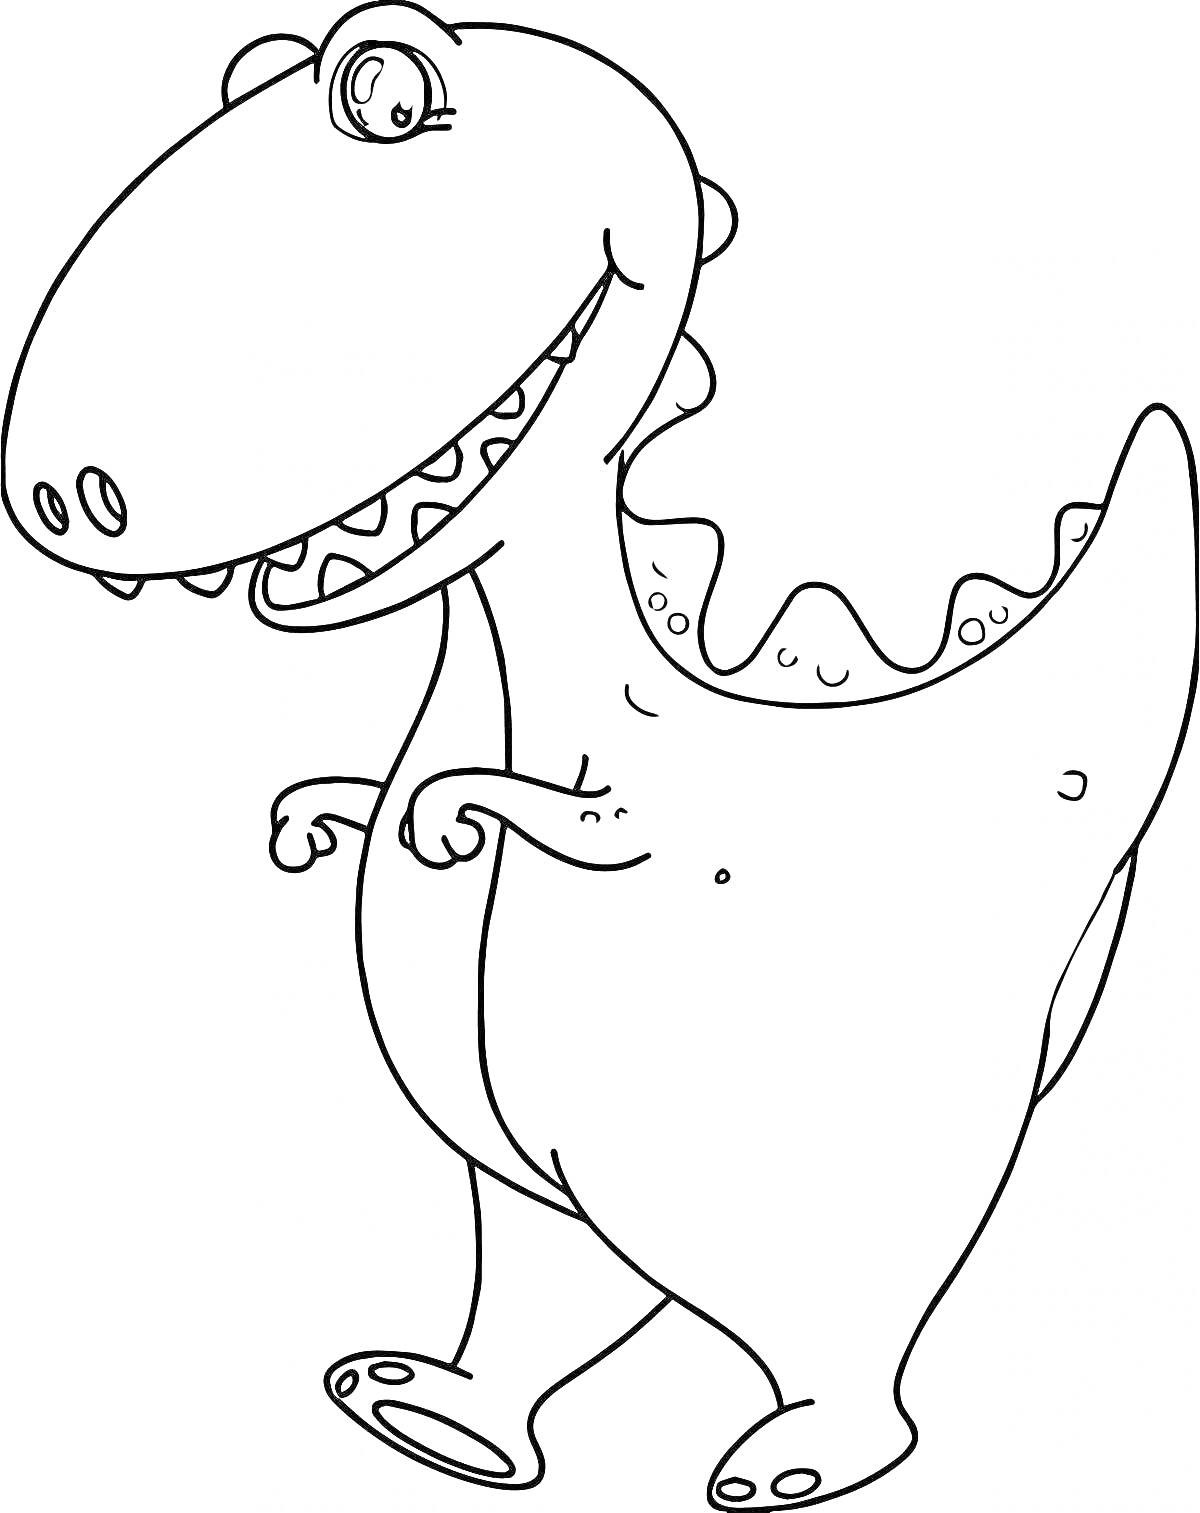 Динозаврик с большими зубами и краткими лапками